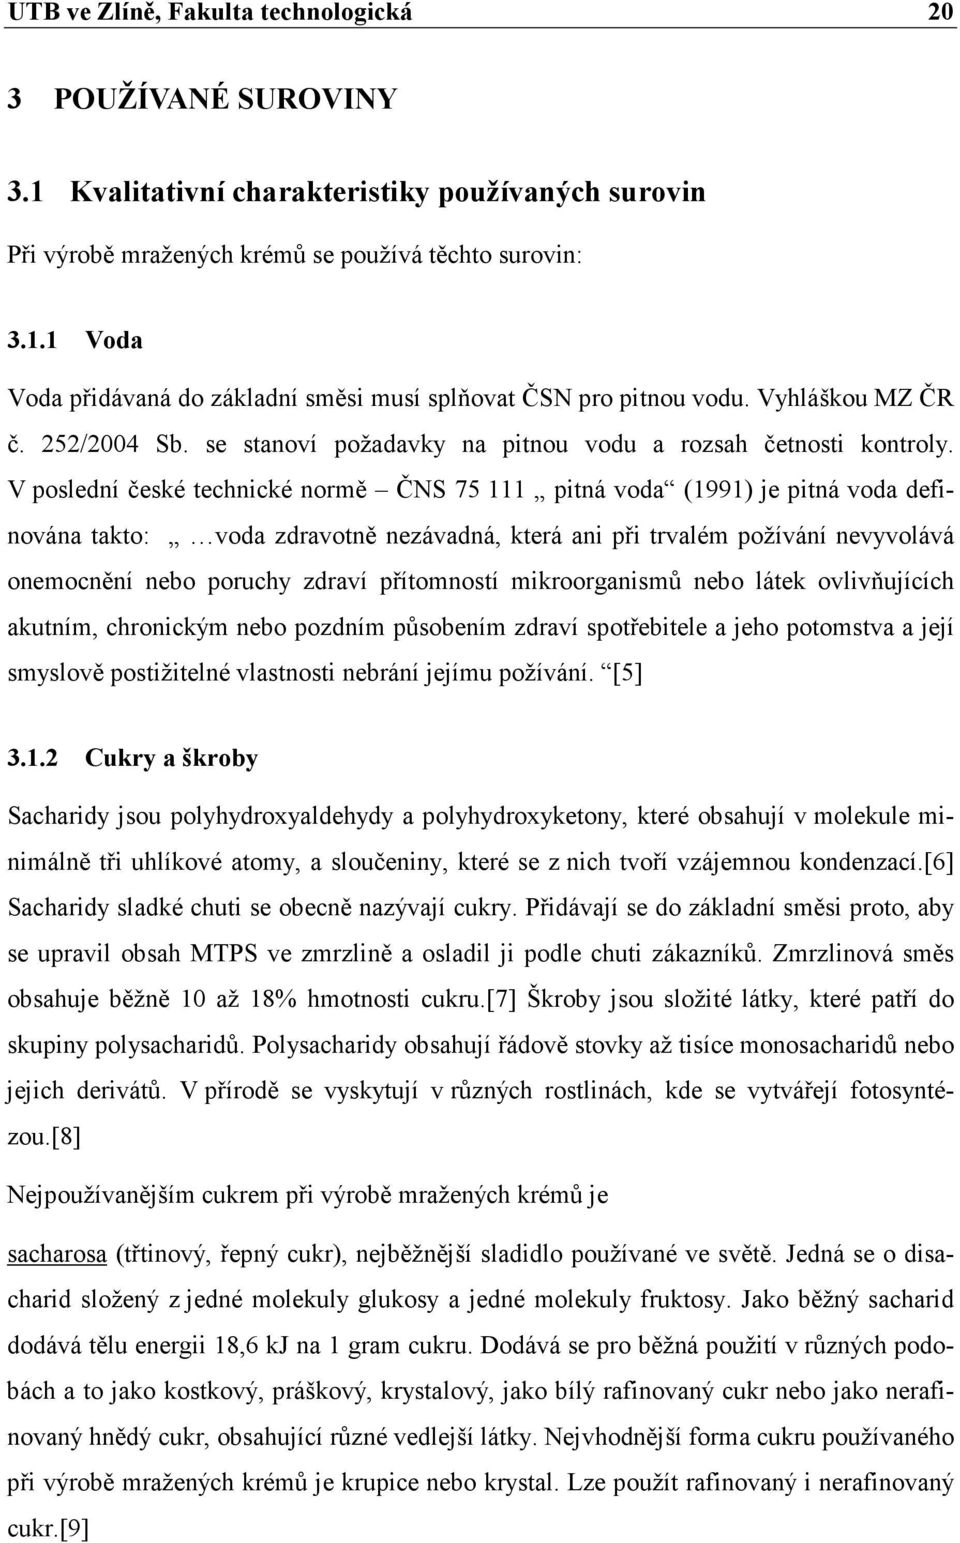 V poslední české technické normě ČNS 75 111 pitná voda (1991) je pitná voda definována takto: voda zdravotně nezávadná, která ani při trvalém požívání nevyvolává onemocnění nebo poruchy zdraví